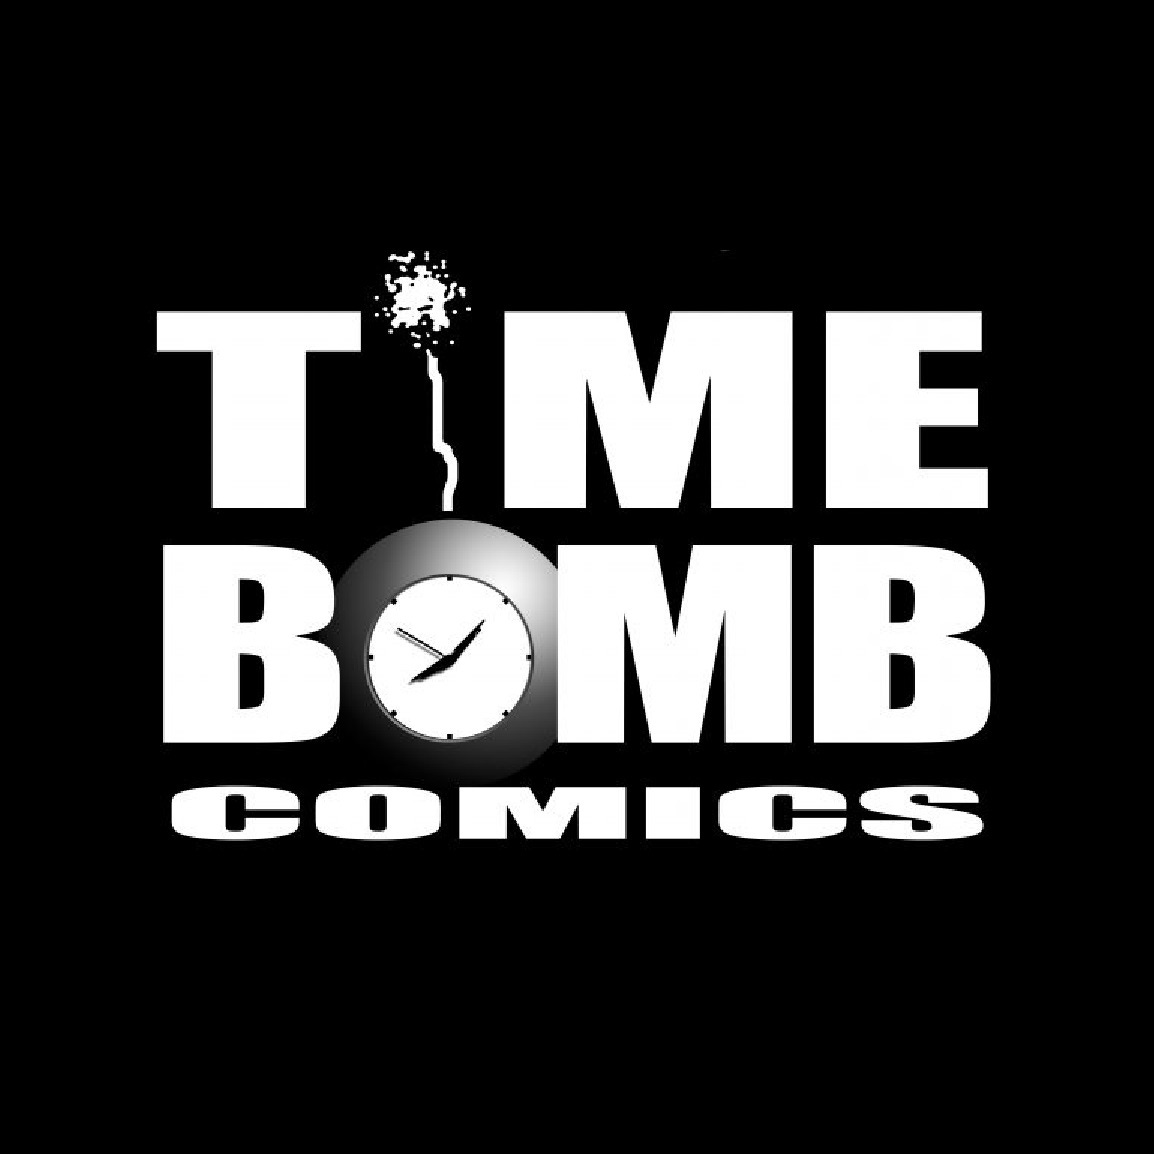 Artwork for Time Bomb’s Newsletter